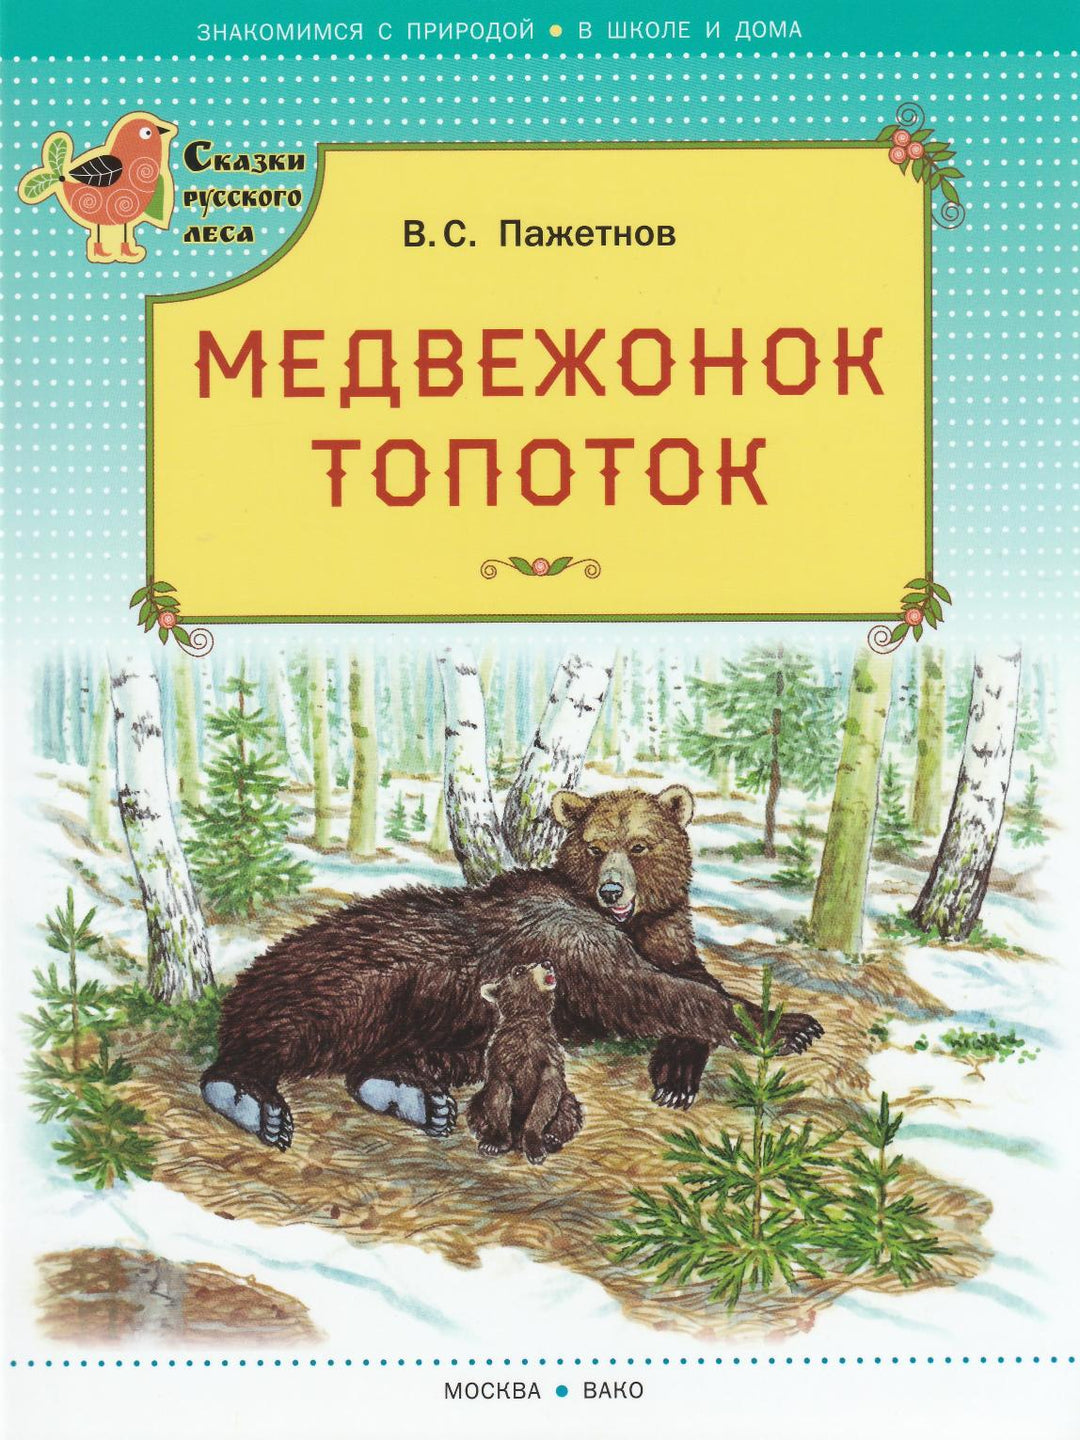 Медвежонок Топоток-Пажетнов В.-Вакоша-Lookomorie